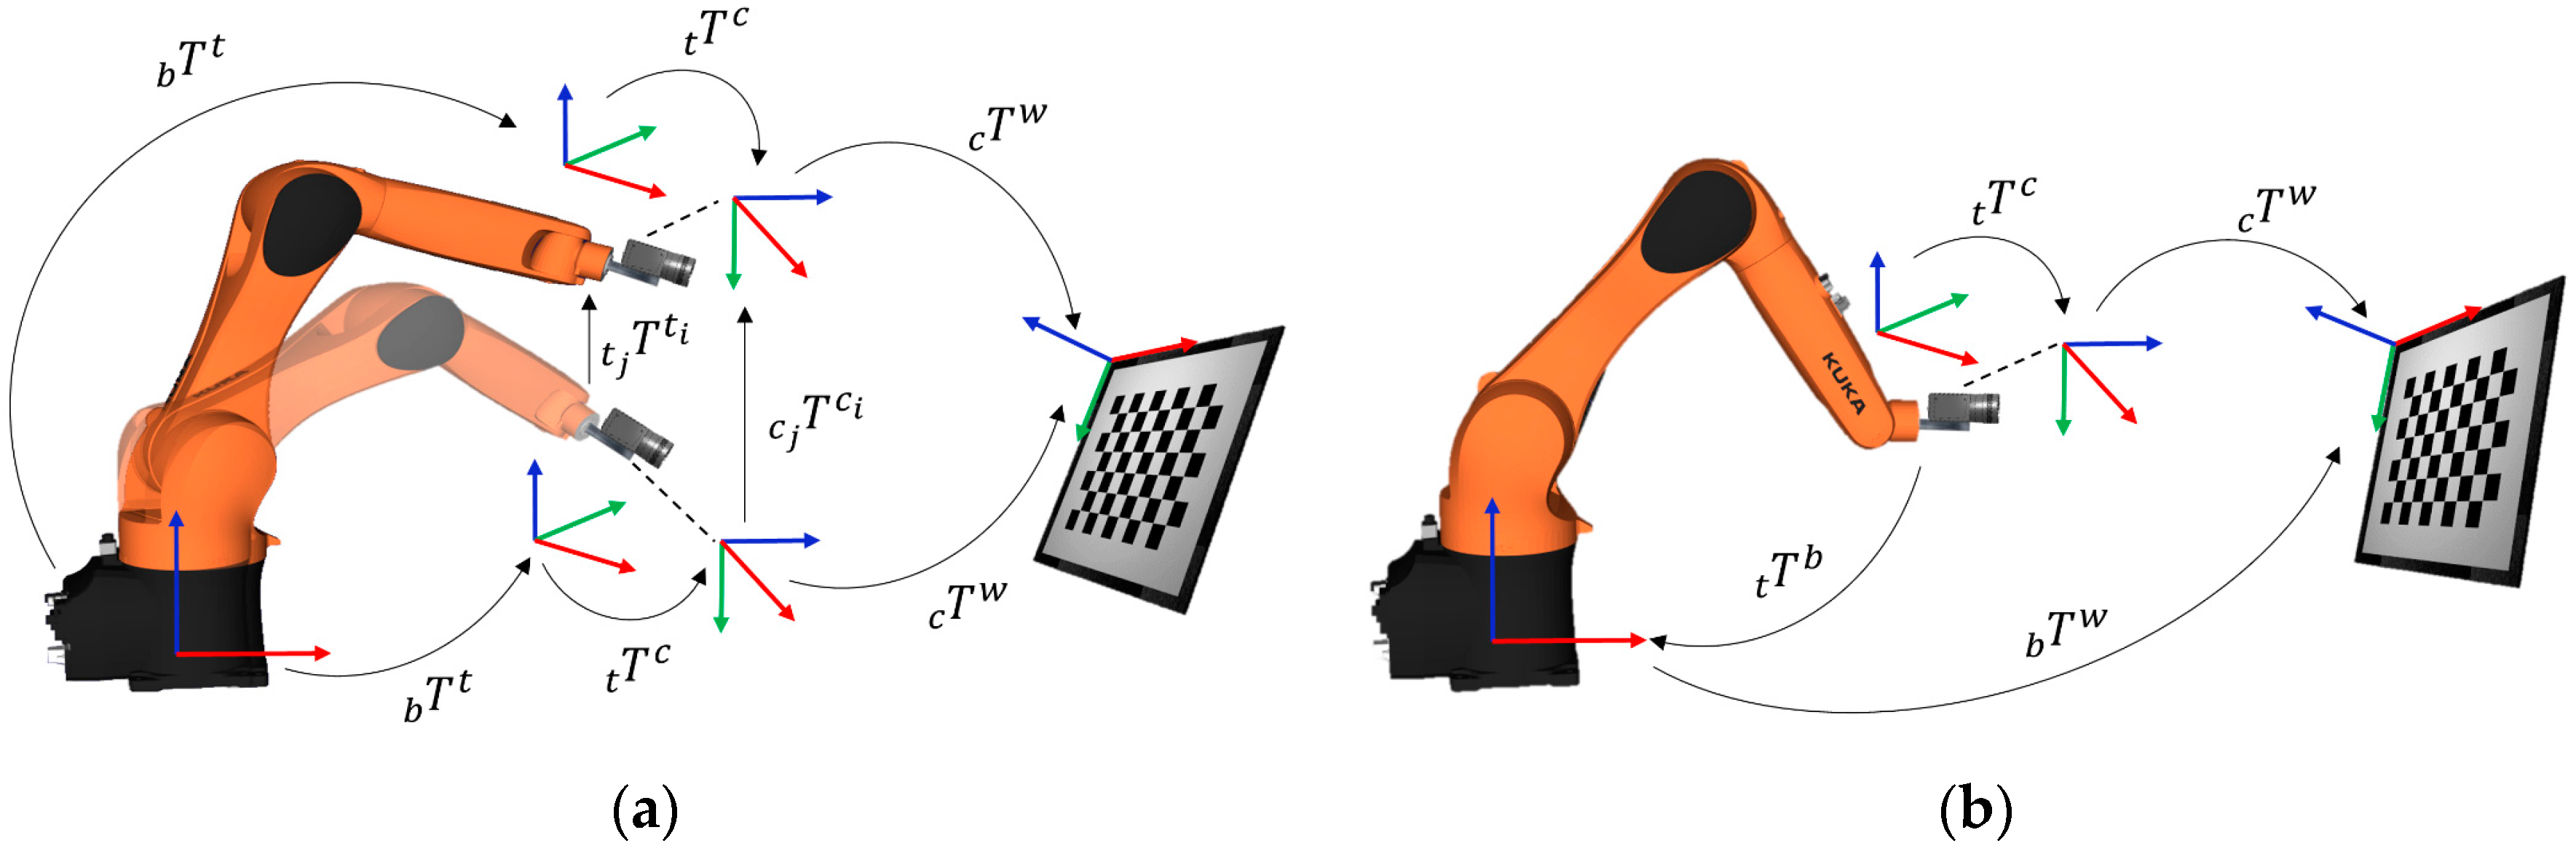 Sensors | Free Full-Text | Methods for Simultaneous Robot ...